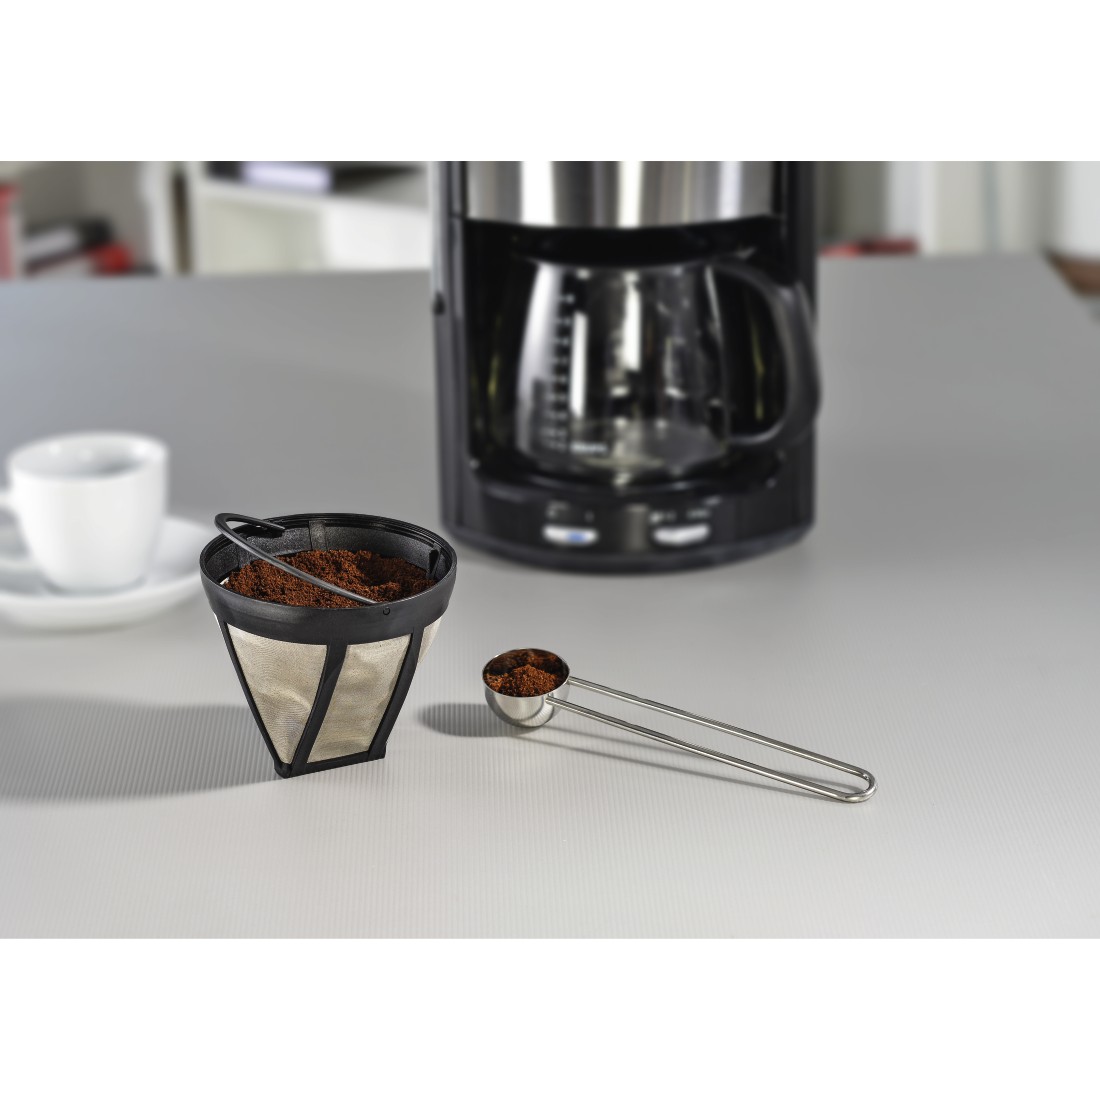 awx Druckfähige Anwendung - Xavax, Dauerfilter für Kaffeemaschine, Ersatz für Filtergröße 4